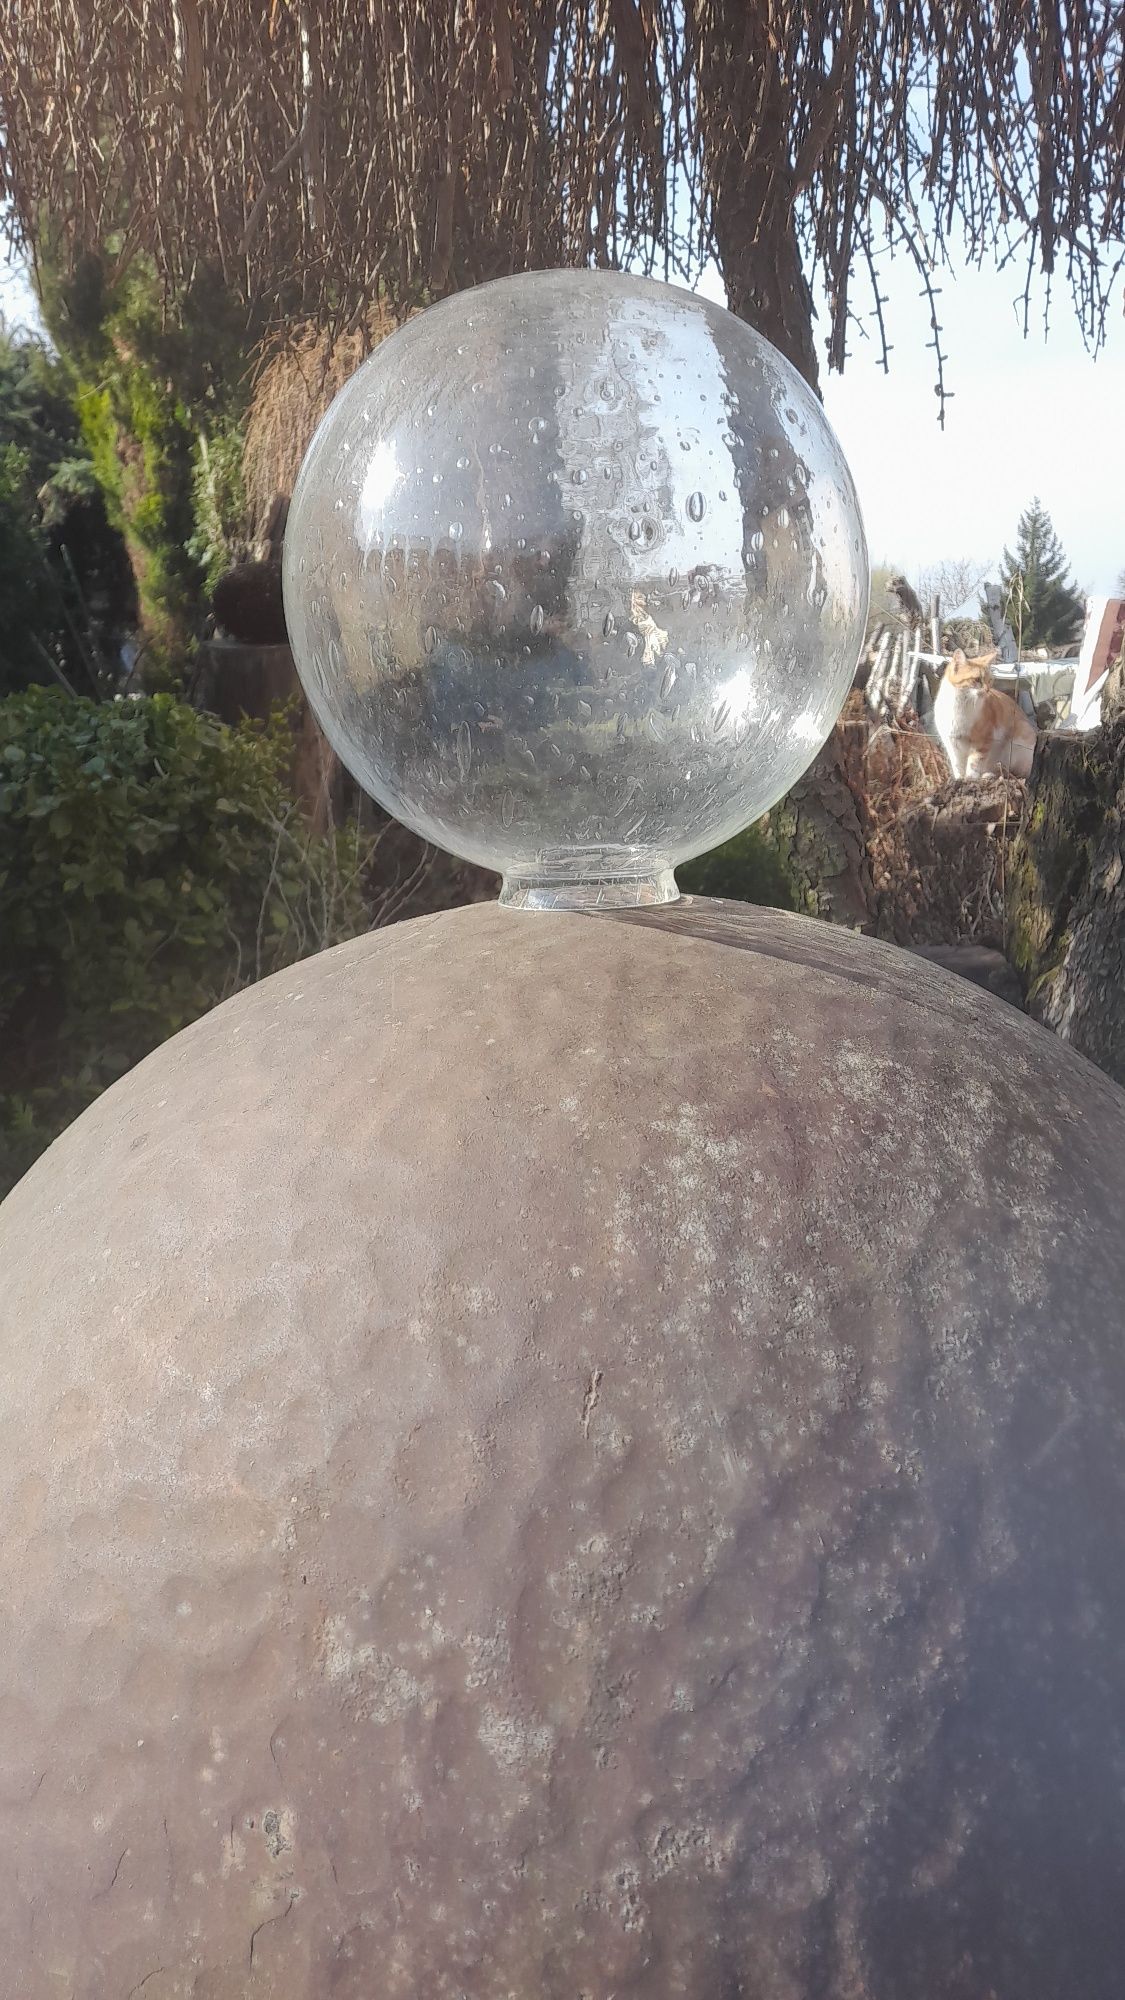 Klosz PRL szkło kryształ kryształy szklana szklane kula rybka ryba